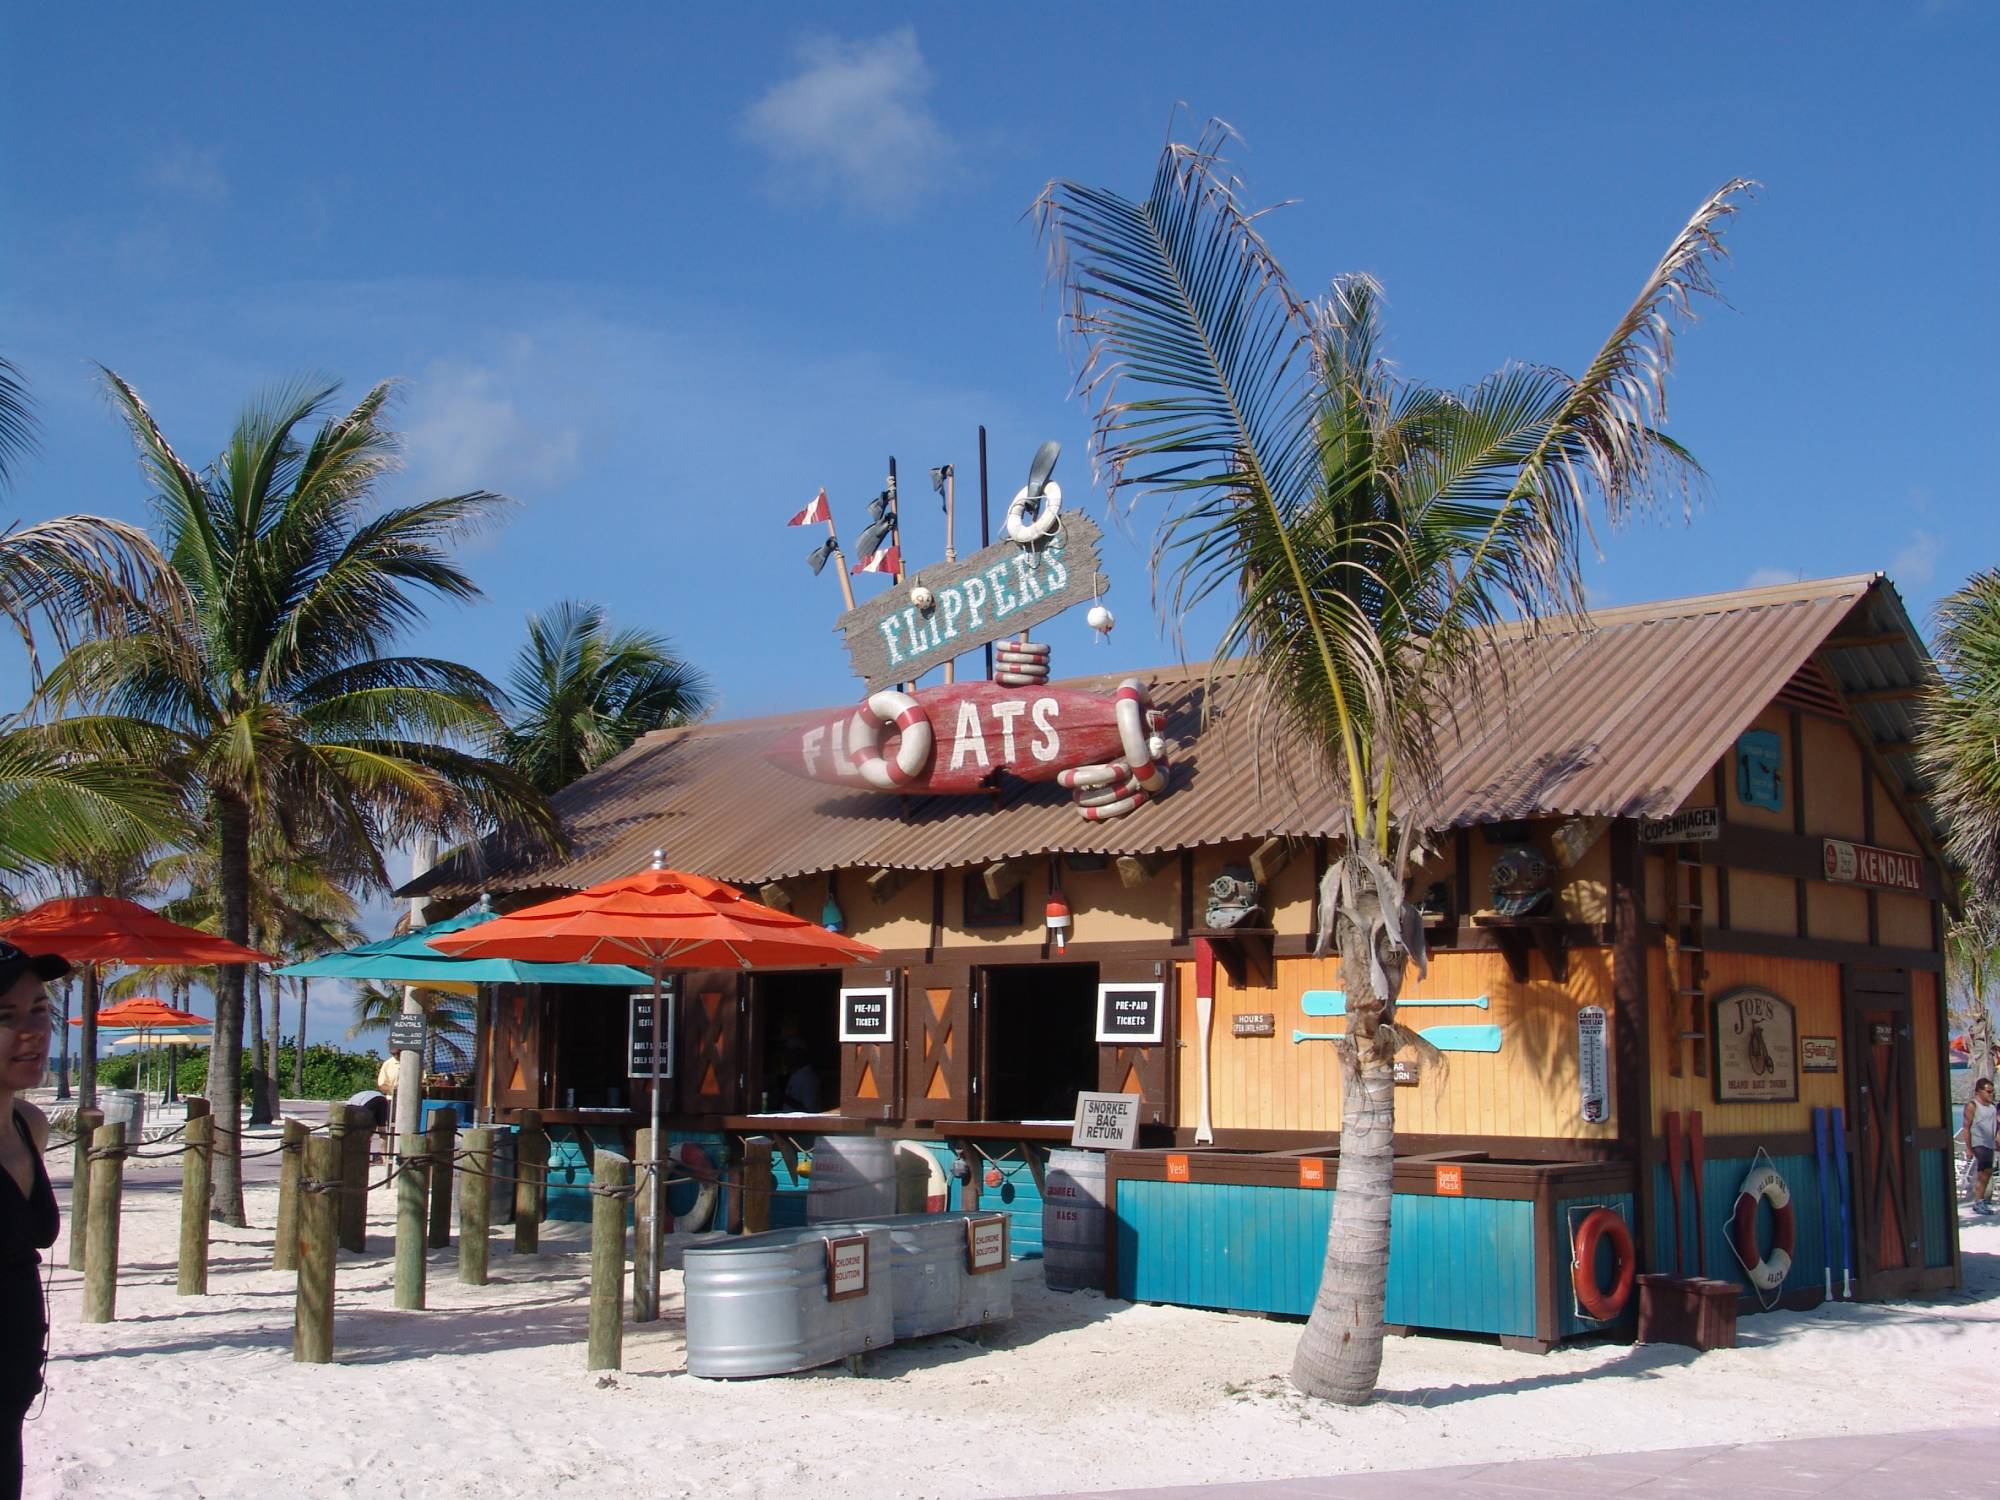 Castaway Cay - shops